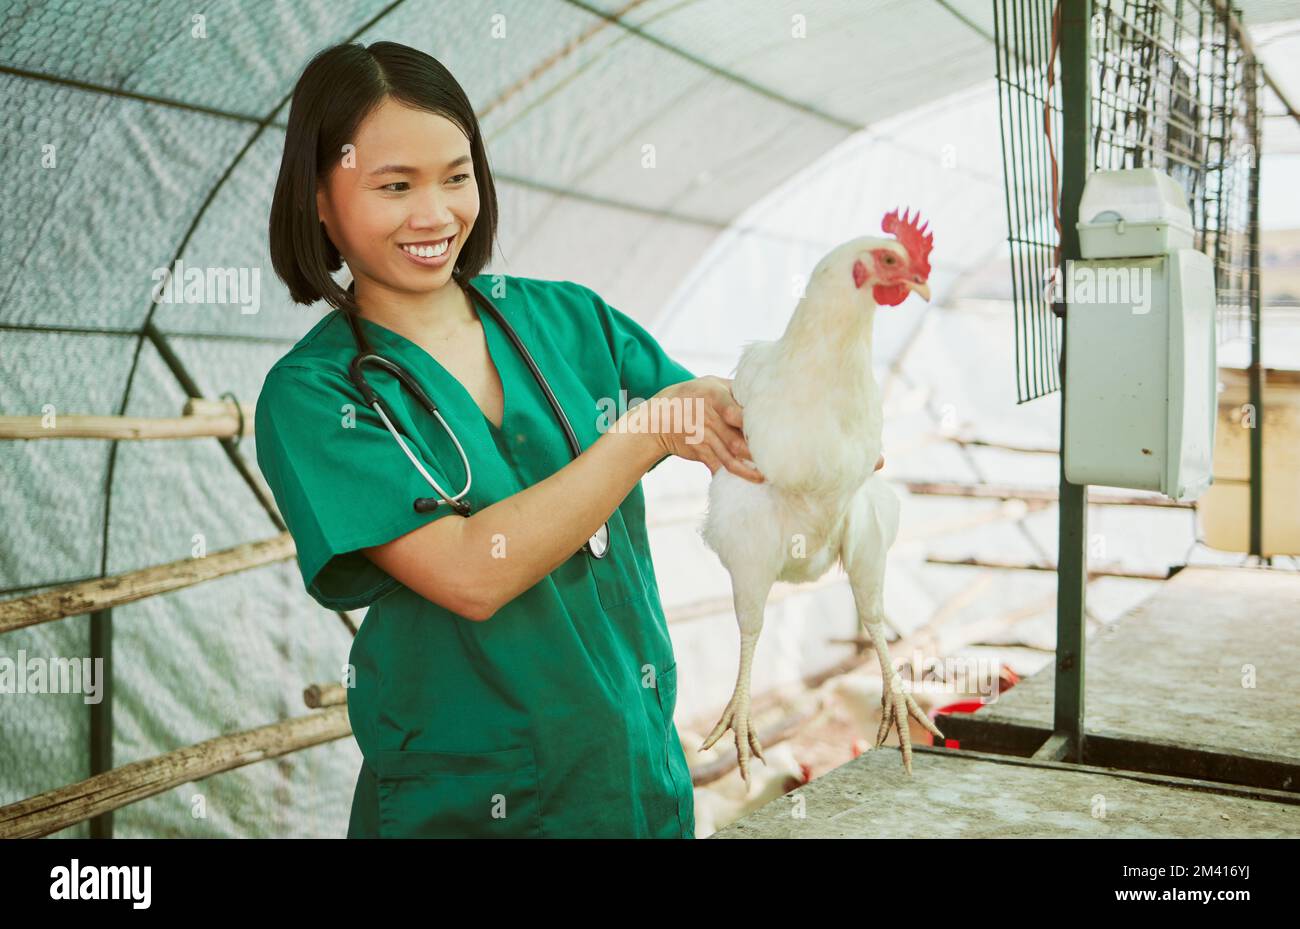 Tierarzt, Hühnerzucht und Frau führen medizinische Untersuchungen, Inspektionen oder Gesundheitsuntersuchungen im Hühnerstall durch. Glücklicher asiatischer Arzt, Geflügel und Wellness Stockfoto